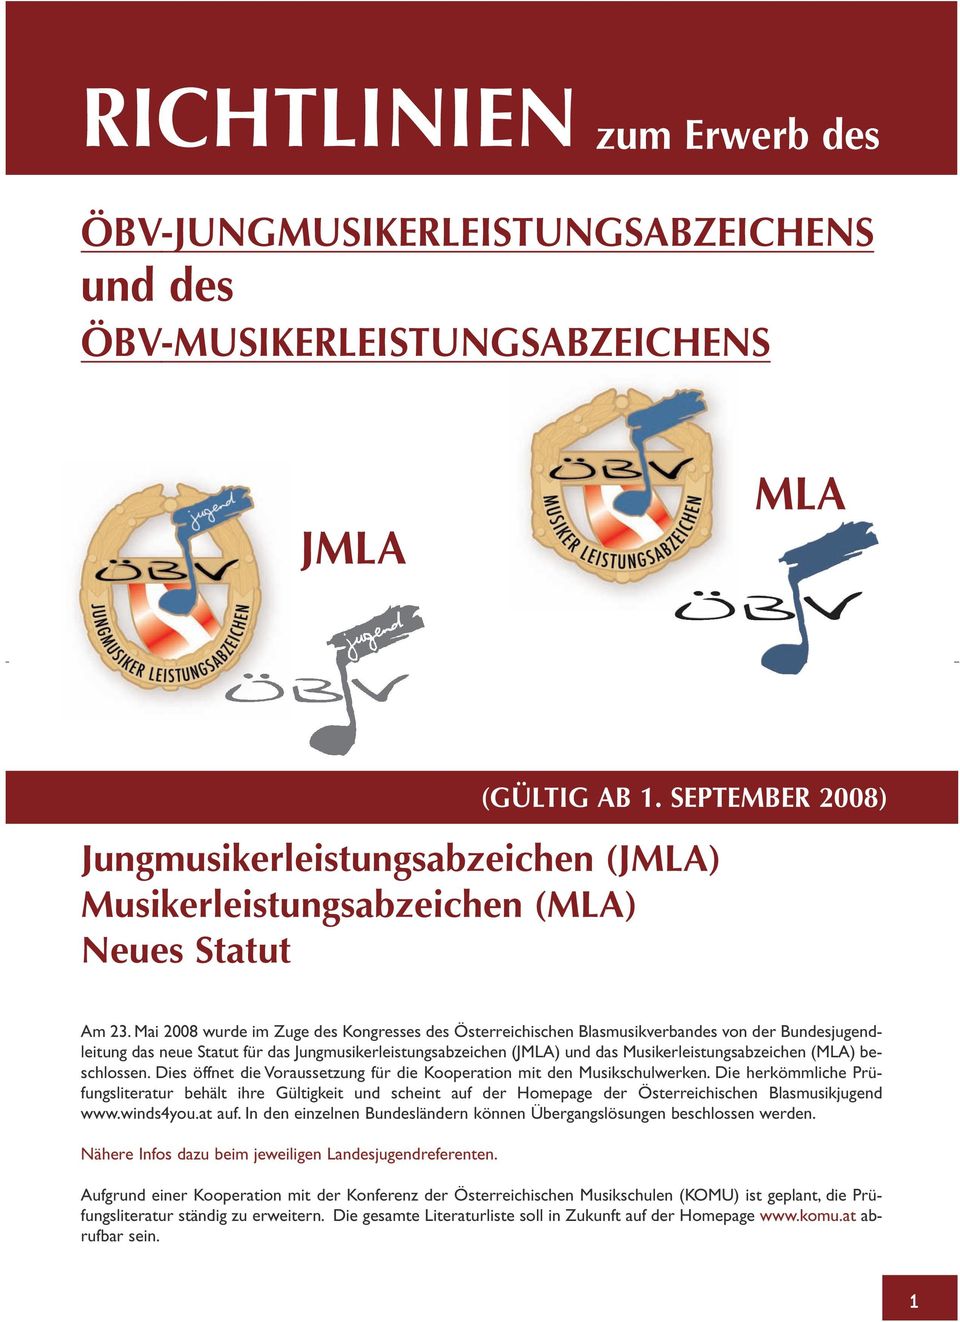 Mai 2008 wurde im Zuge des Kongresses des Österreichischen Blasmusikverbandes von der Bundesjugendleitung das neue Statut für das Jungmusikerleistungsabzeichen (JMLA) und das